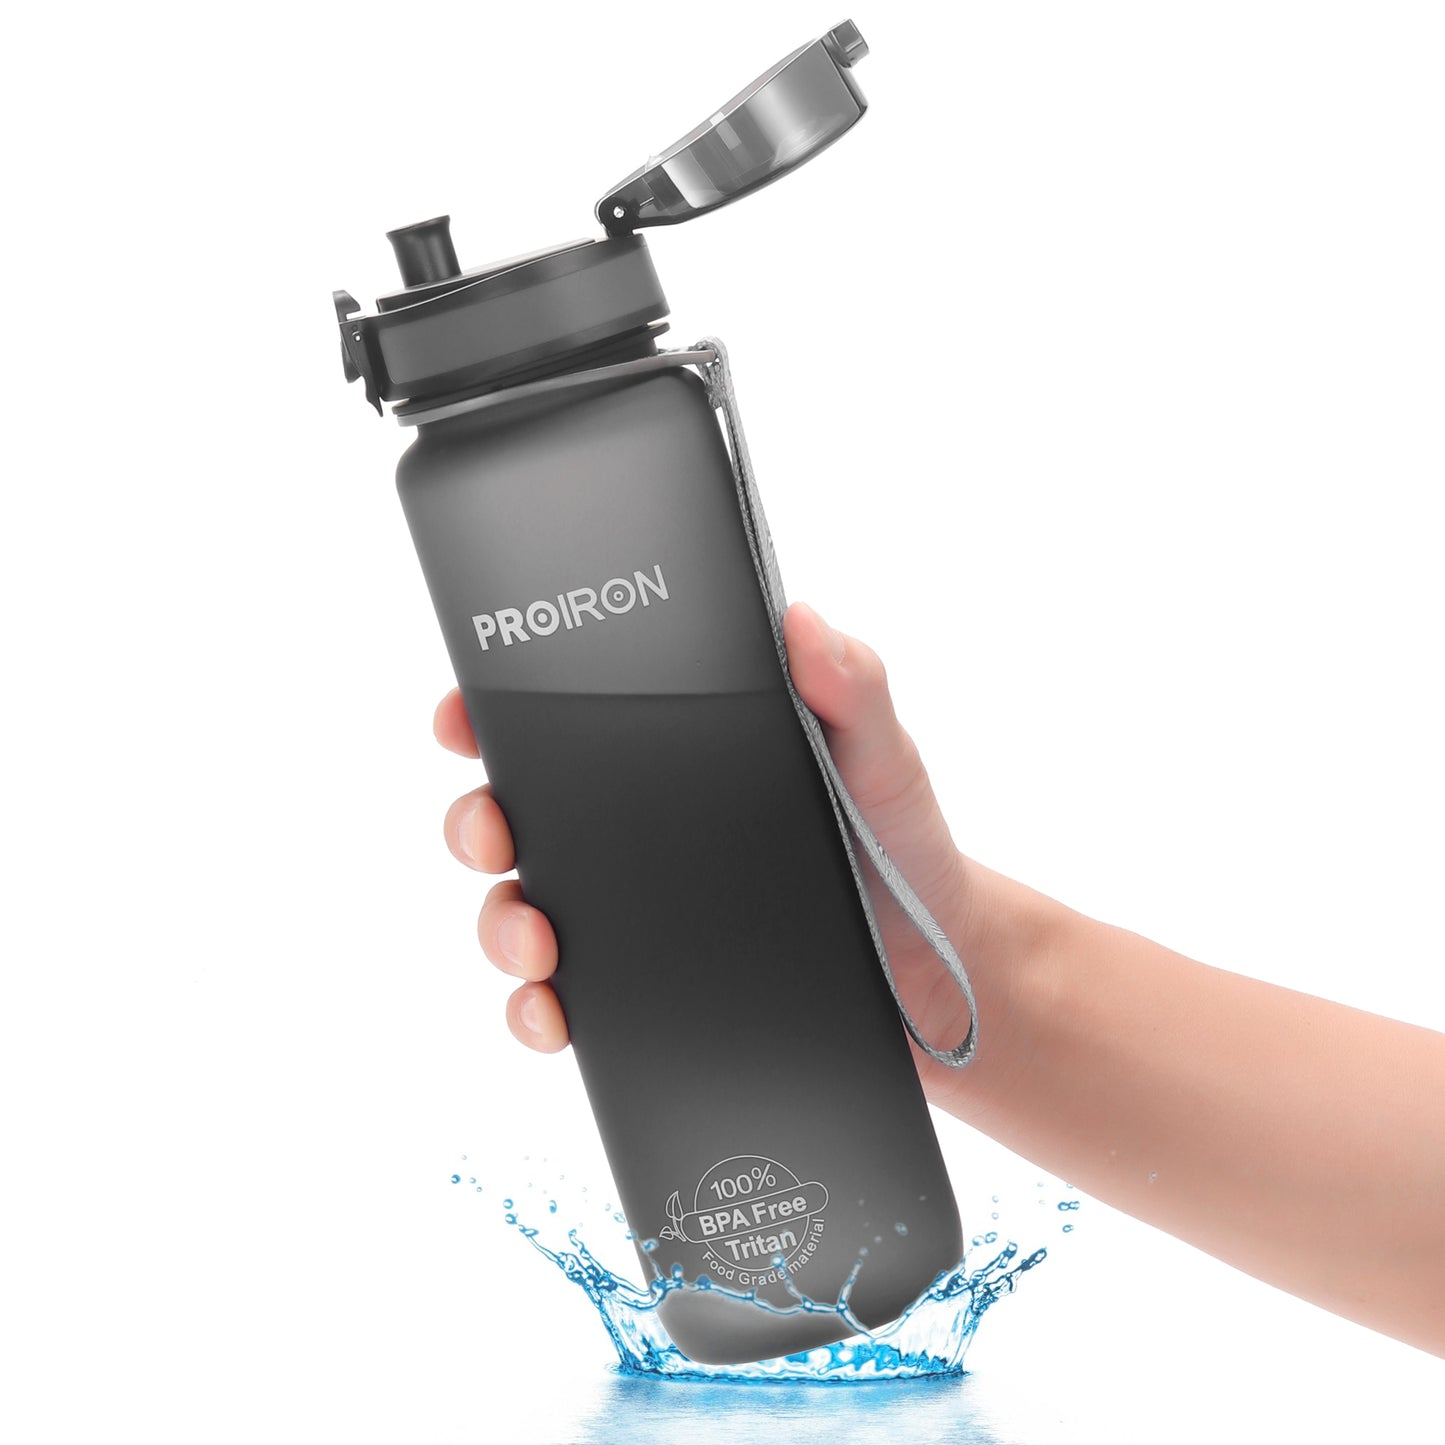 BPA-freie Sportwasserflasche mit Filter und Protein Shaker Ball 250ml 